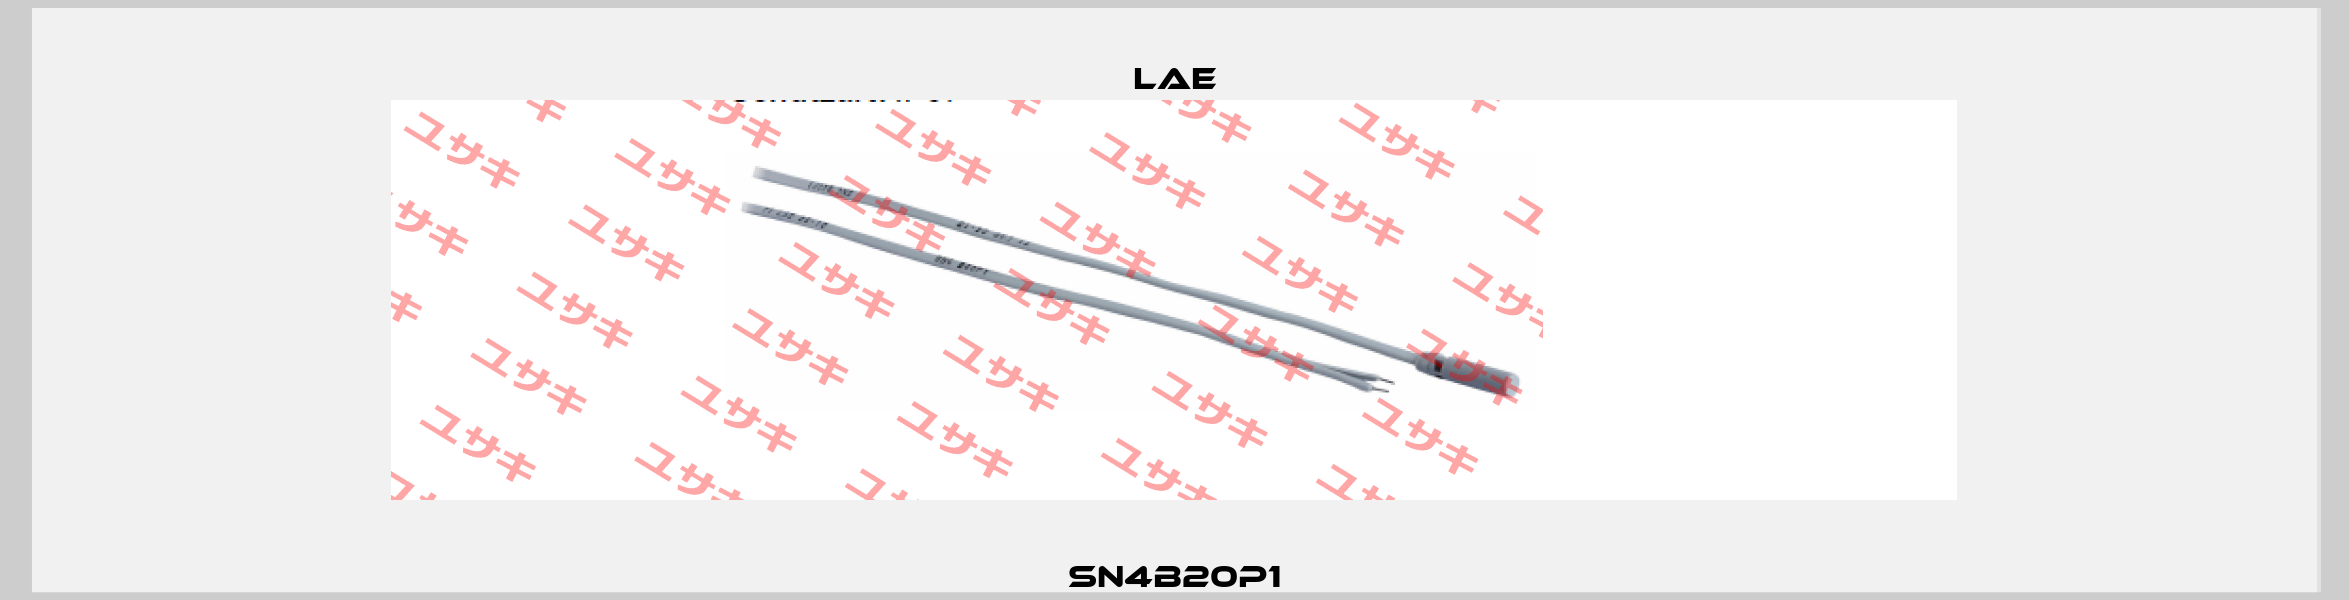 SN4B20P1 LAE